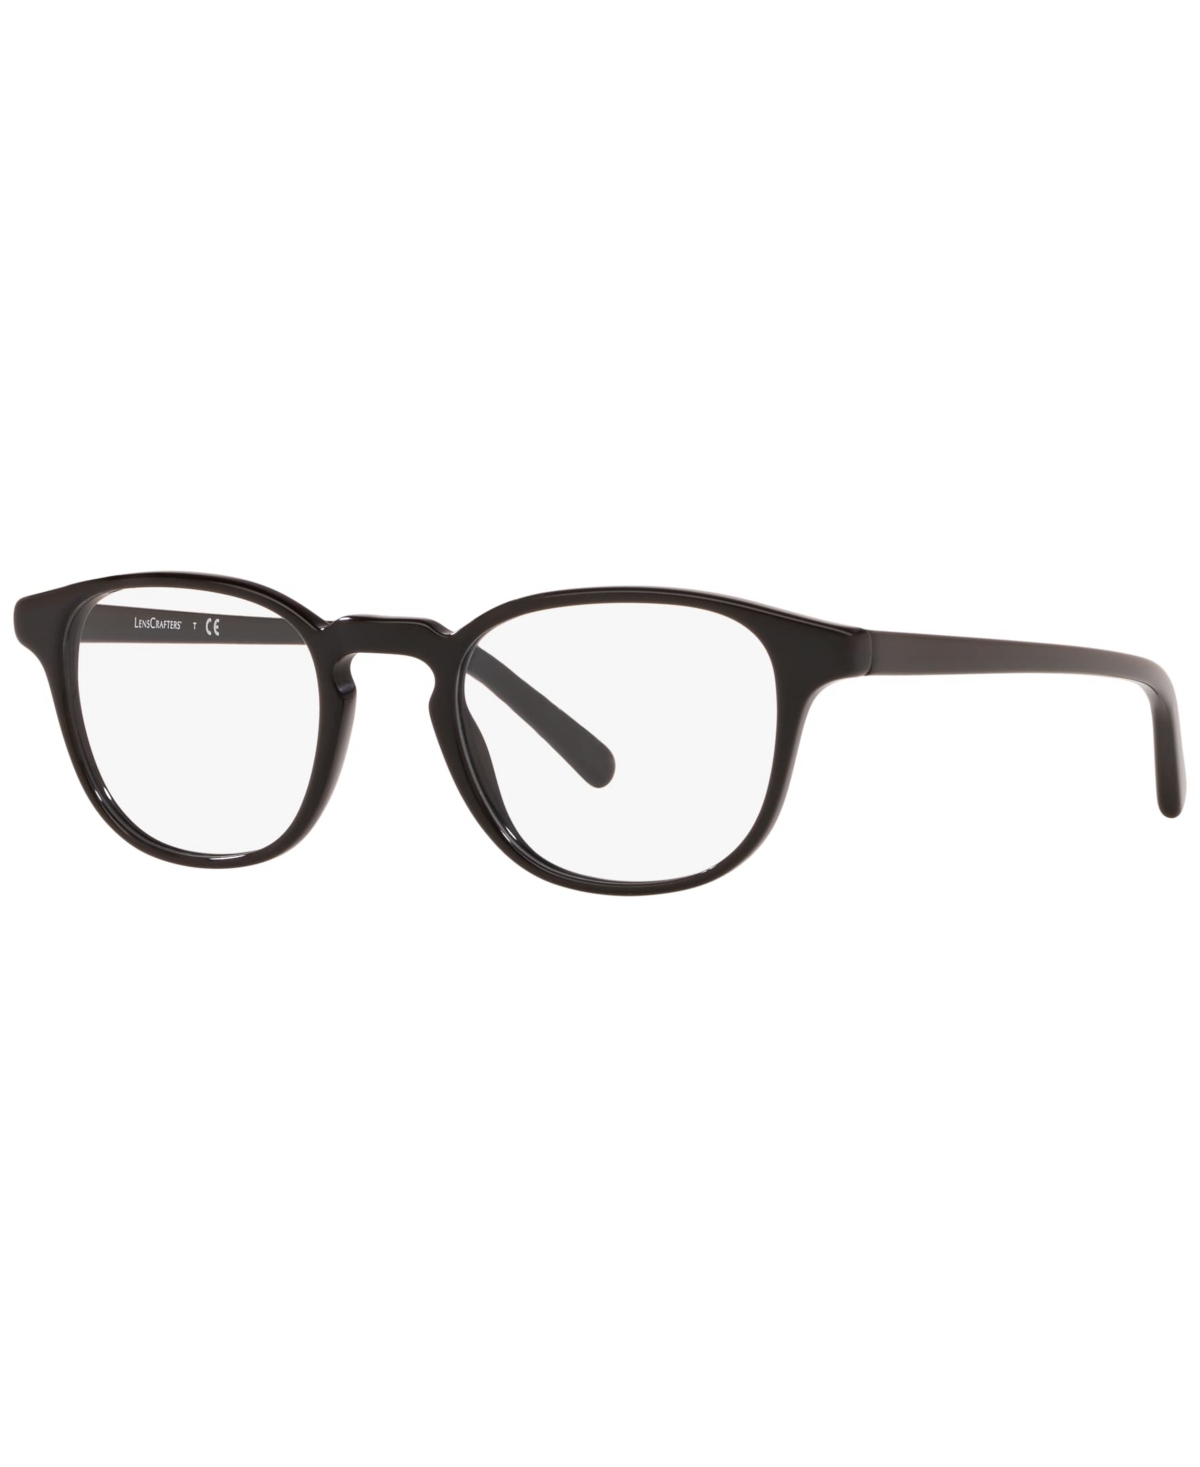 Men's Eyeglasses, EC2004 - Black